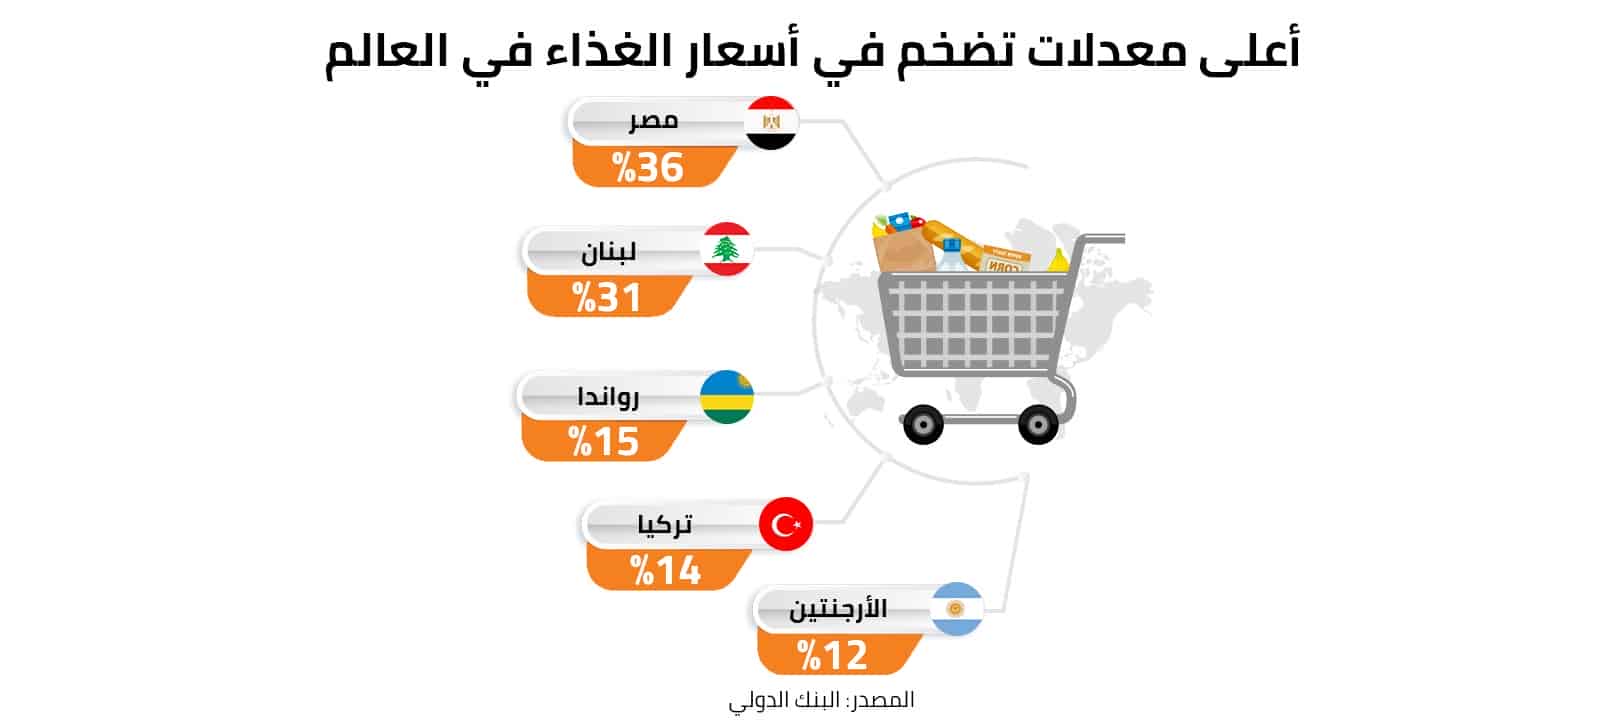 أعلى تضخم في أسعار الغذاء في العالم  